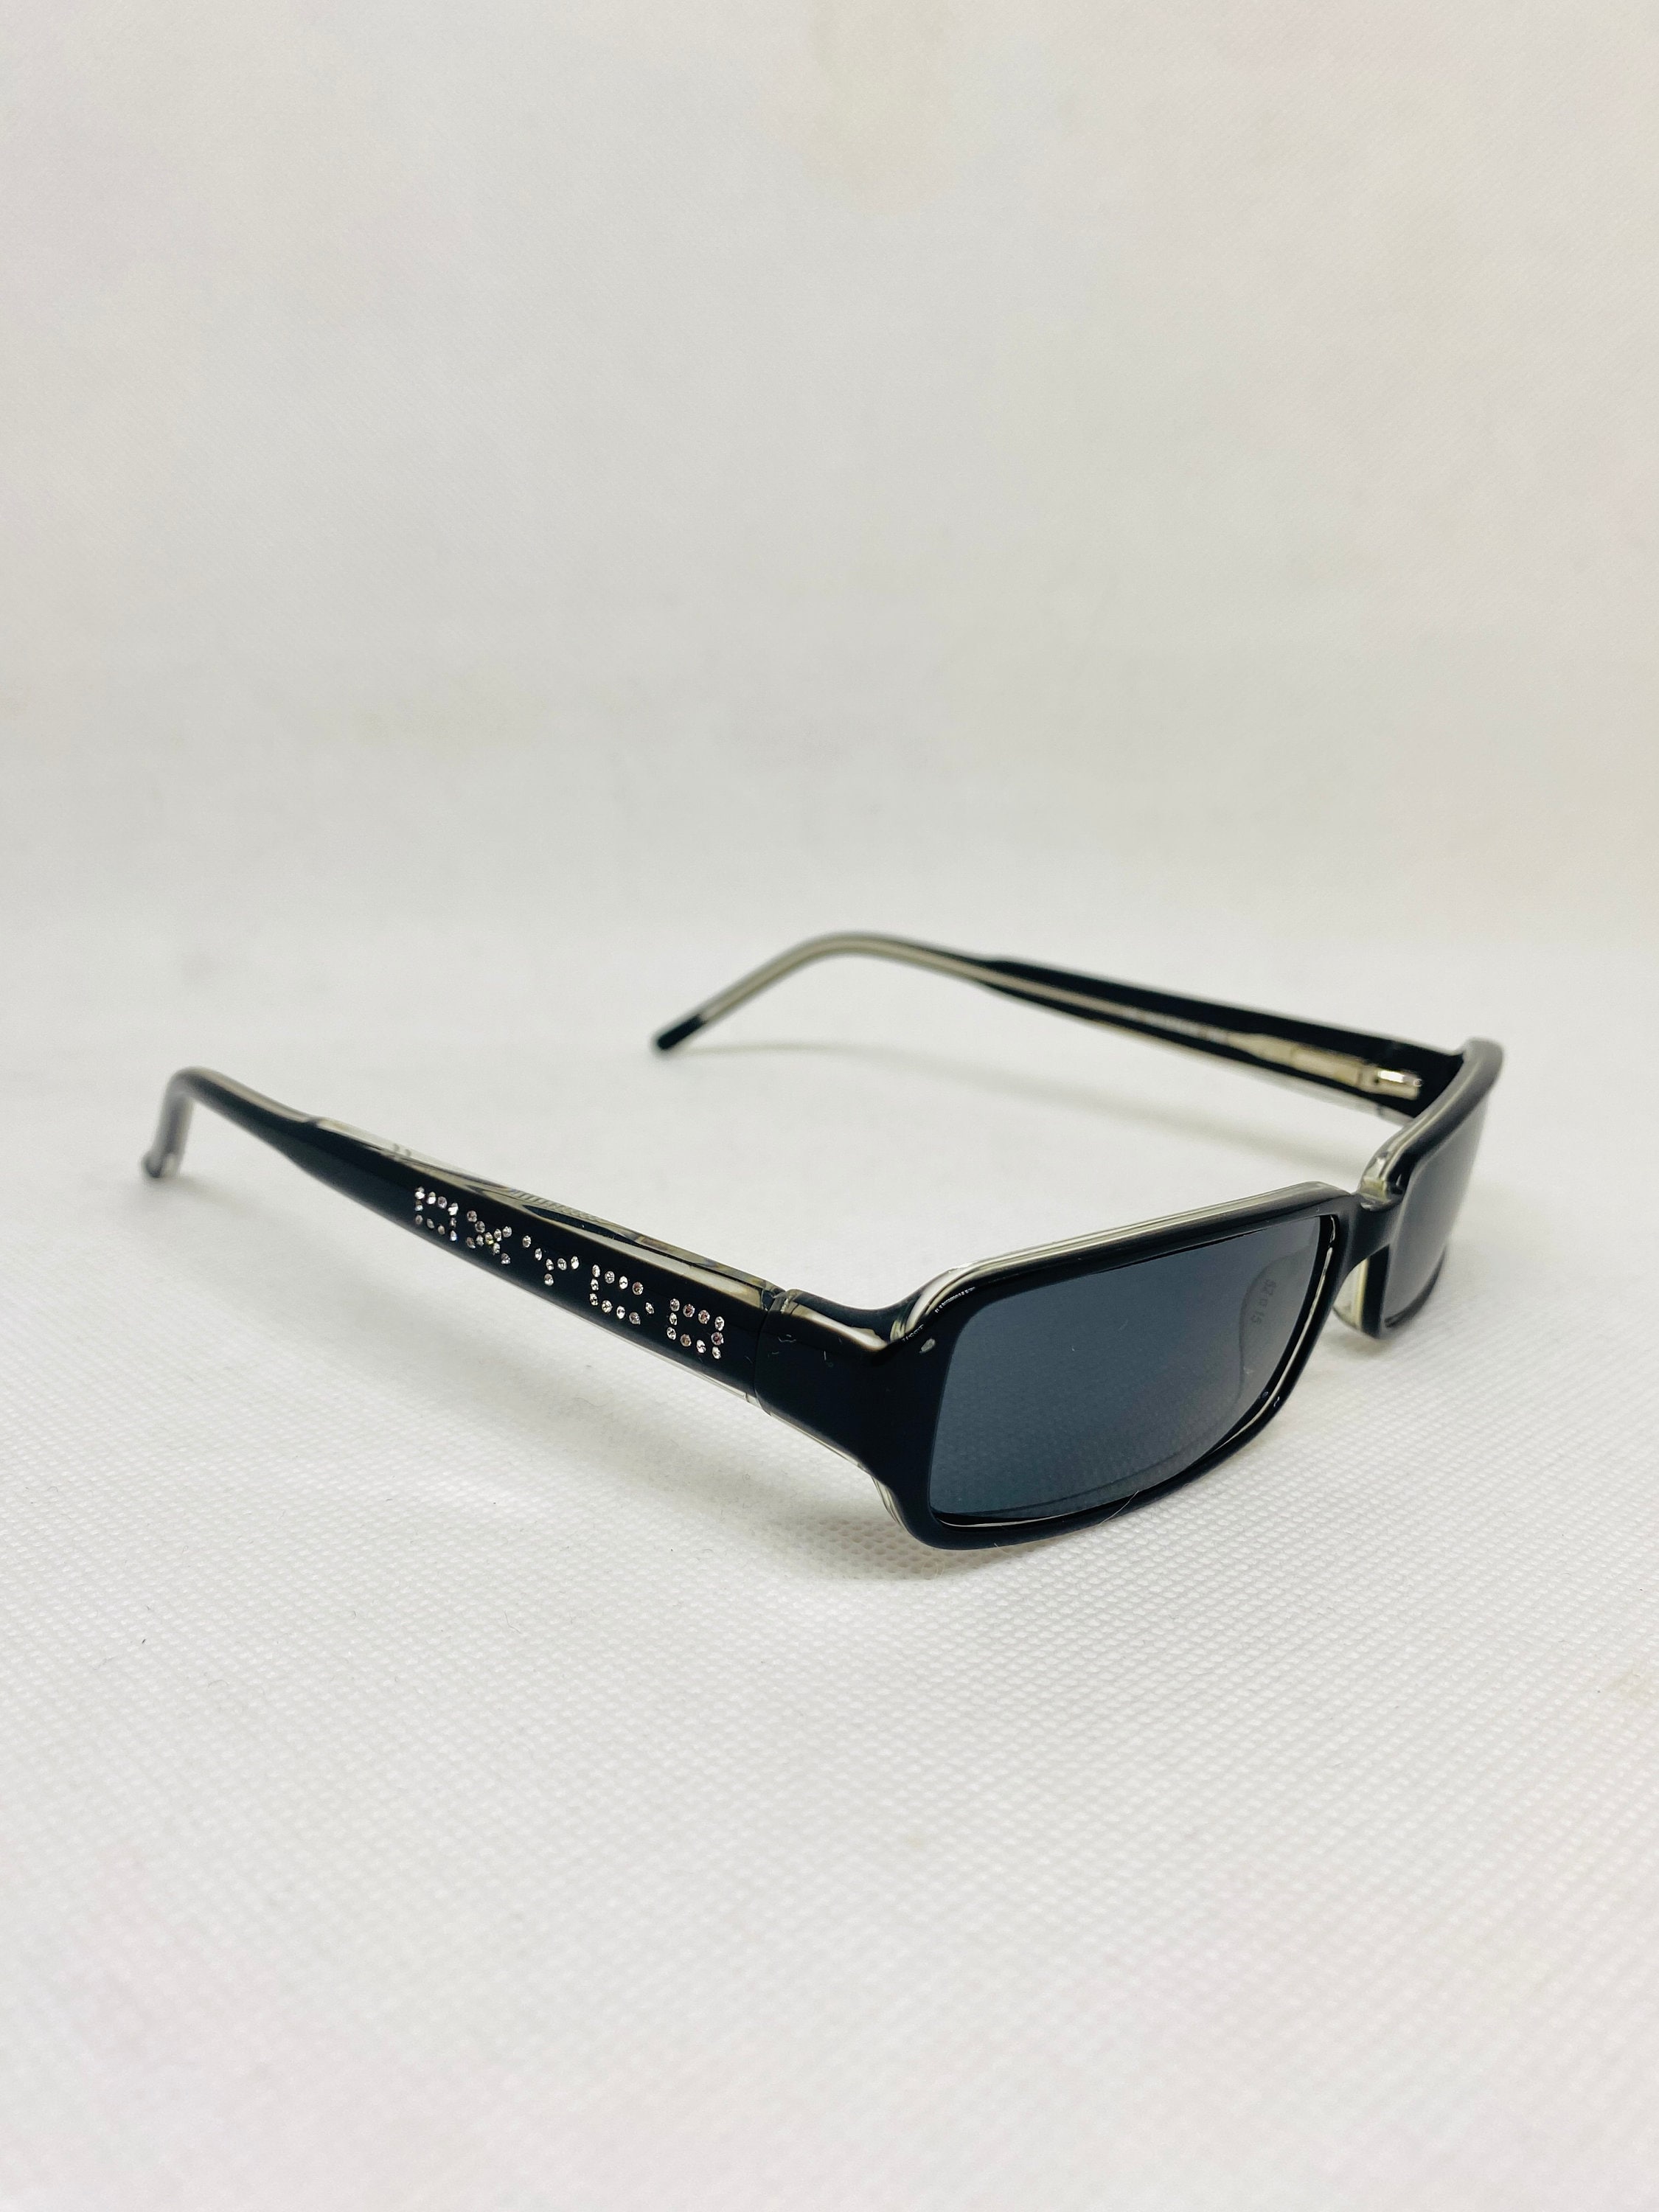 Buy OXYDO X 251/ Rhinestones Mh9 52 15 135 Vintage Sunglasses Online in  India 